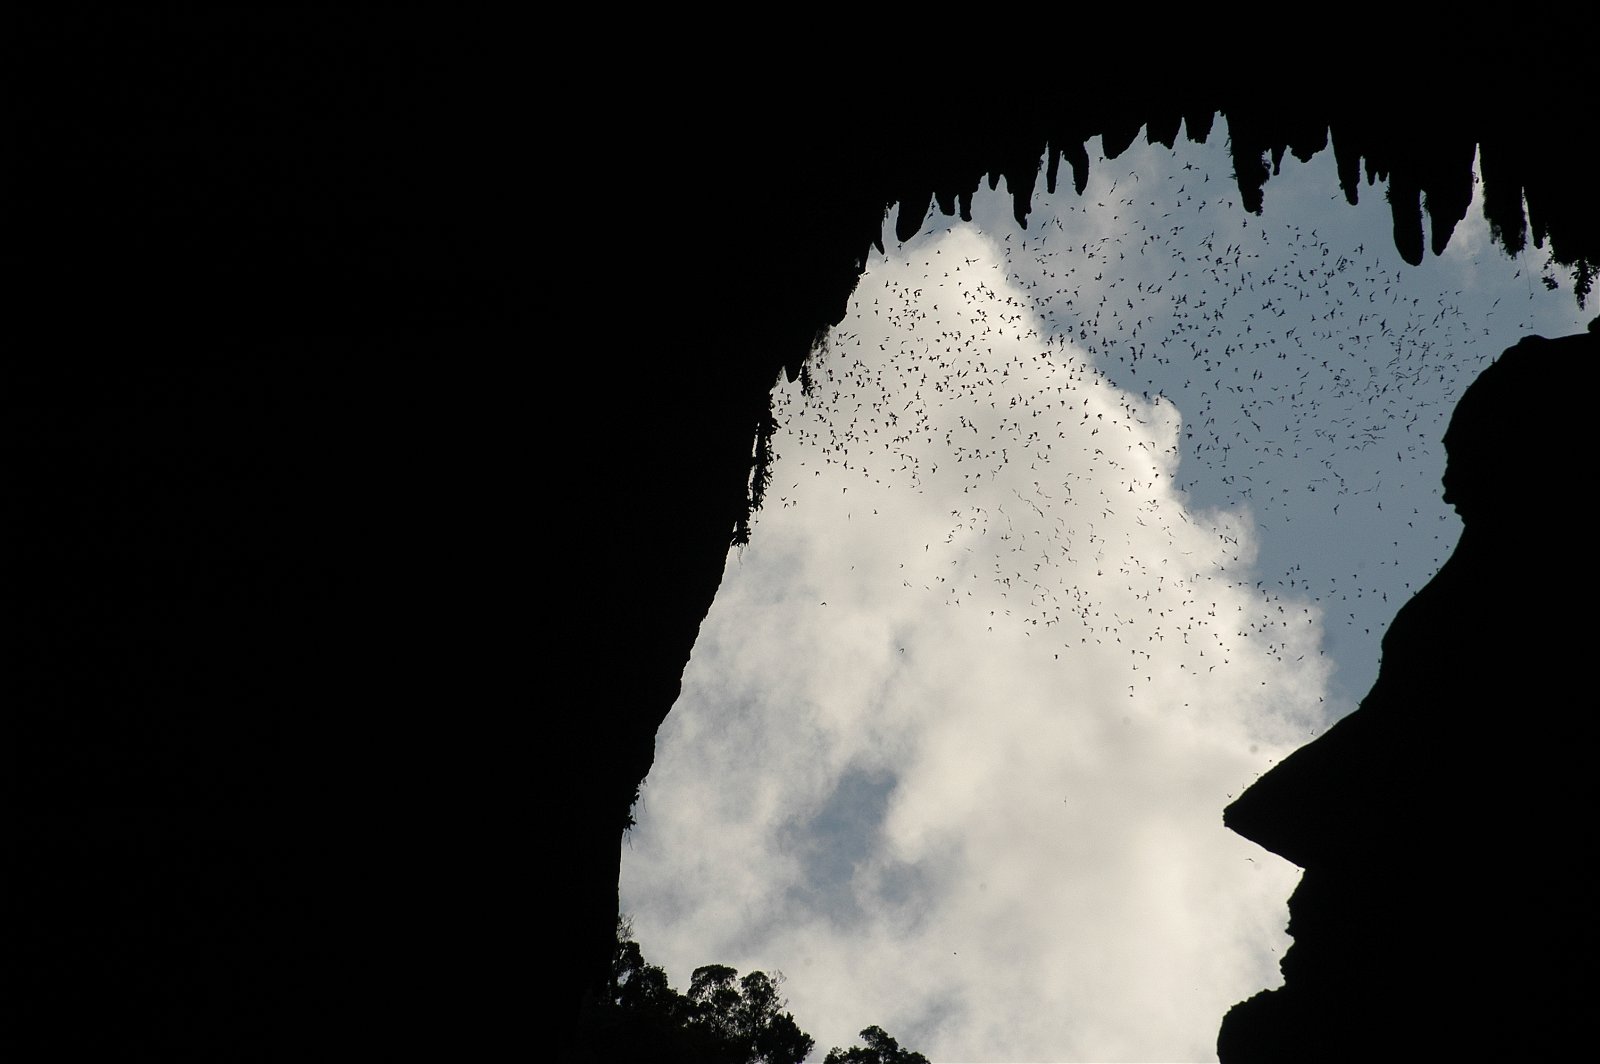 砂劳越姆鲁国家公园鹿洞，除了在傍晚时分能一览超过200万只蝙蝠大军外出觅食的奇景外，还可以看到山壁岩石所呈现出的前美国总统林肯侧面剪影。（图取自大马观光局）